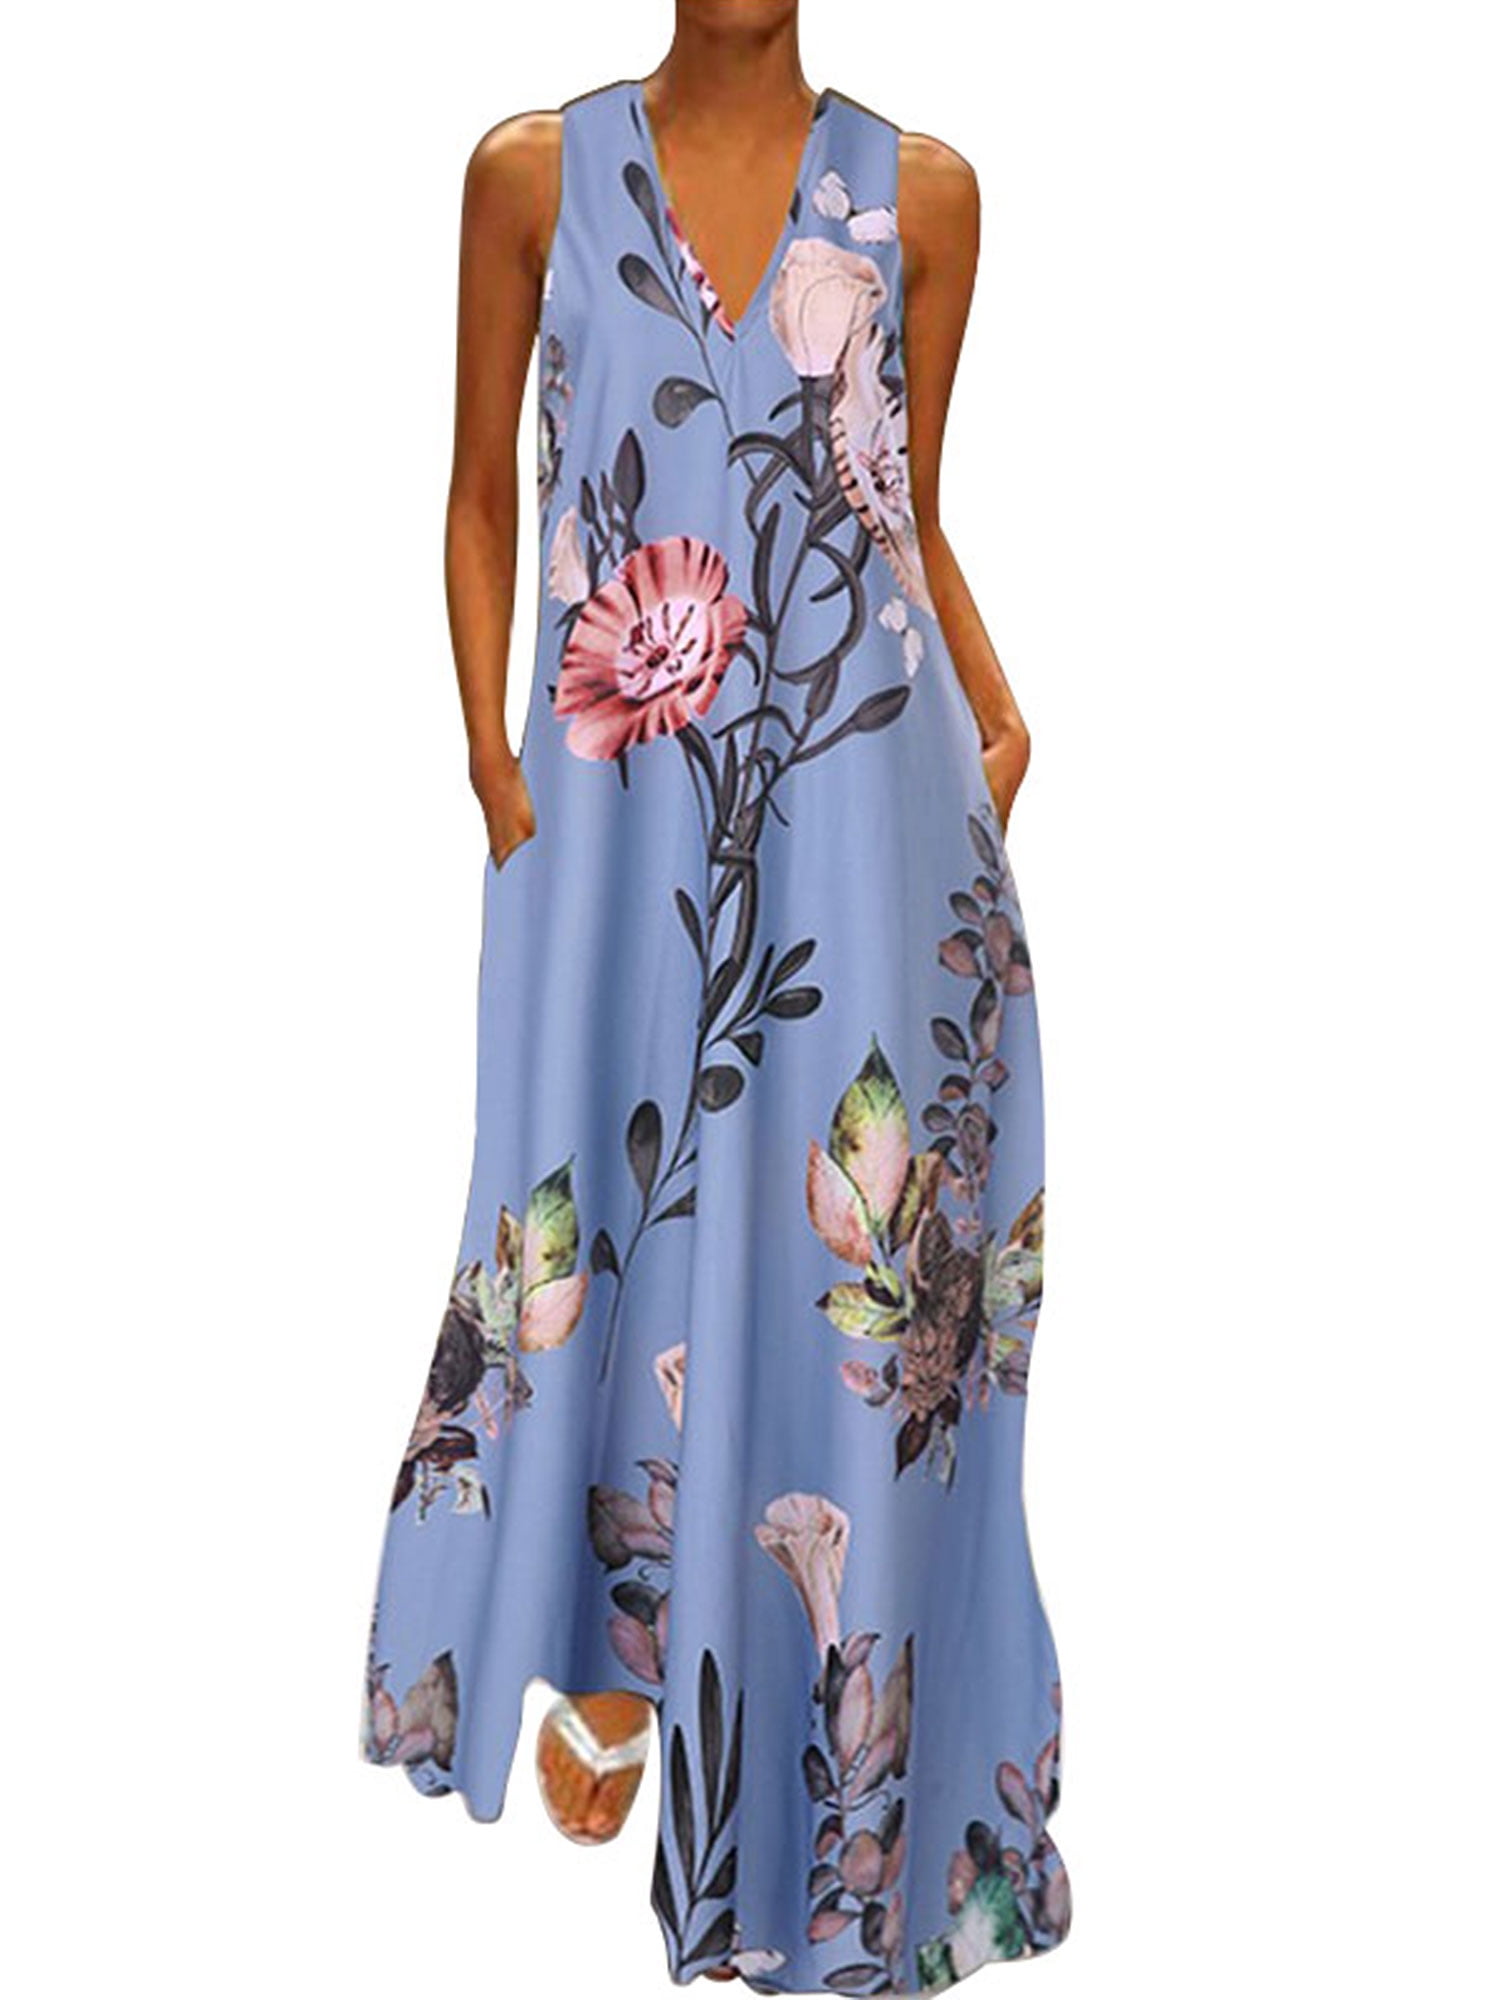 Women Floral Sleeveelss Mini Dress Summer Beach Ruffle Club Sundress Plus Size